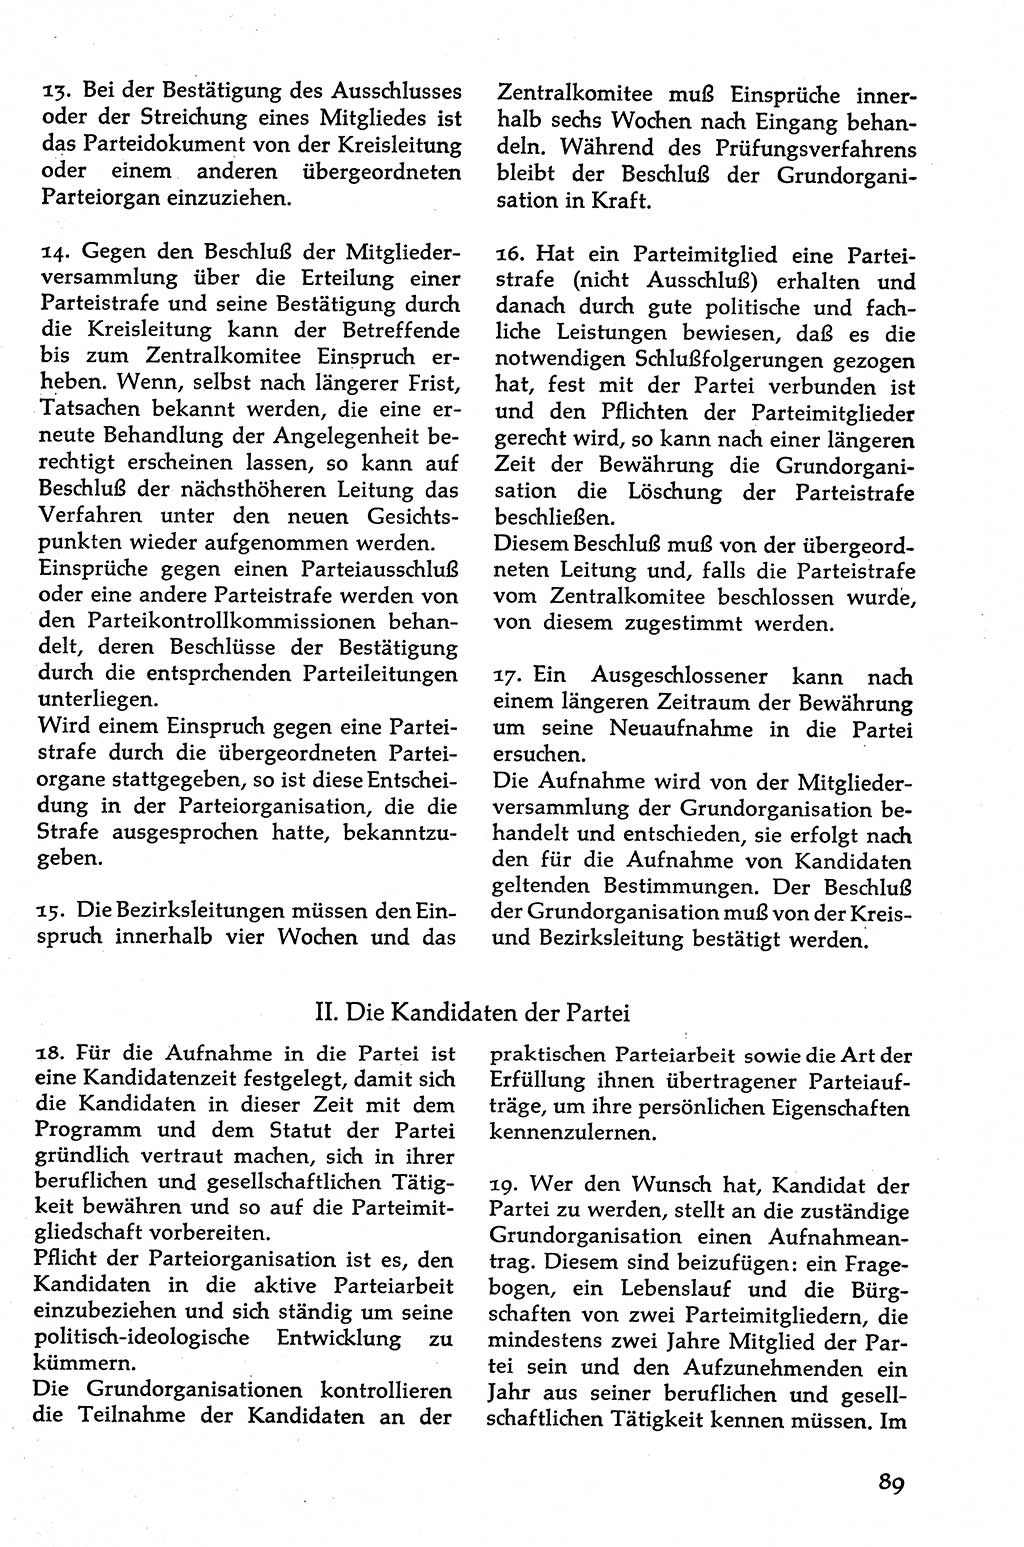 Volksdemokratische Ordnung in Mitteldeutschland [Deutsche Demokratische Republik (DDR)], Texte zur verfassungsrechtlichen Situation 1963, Seite 89 (Volksdem. Ordn. Md. DDR 1963, S. 89)